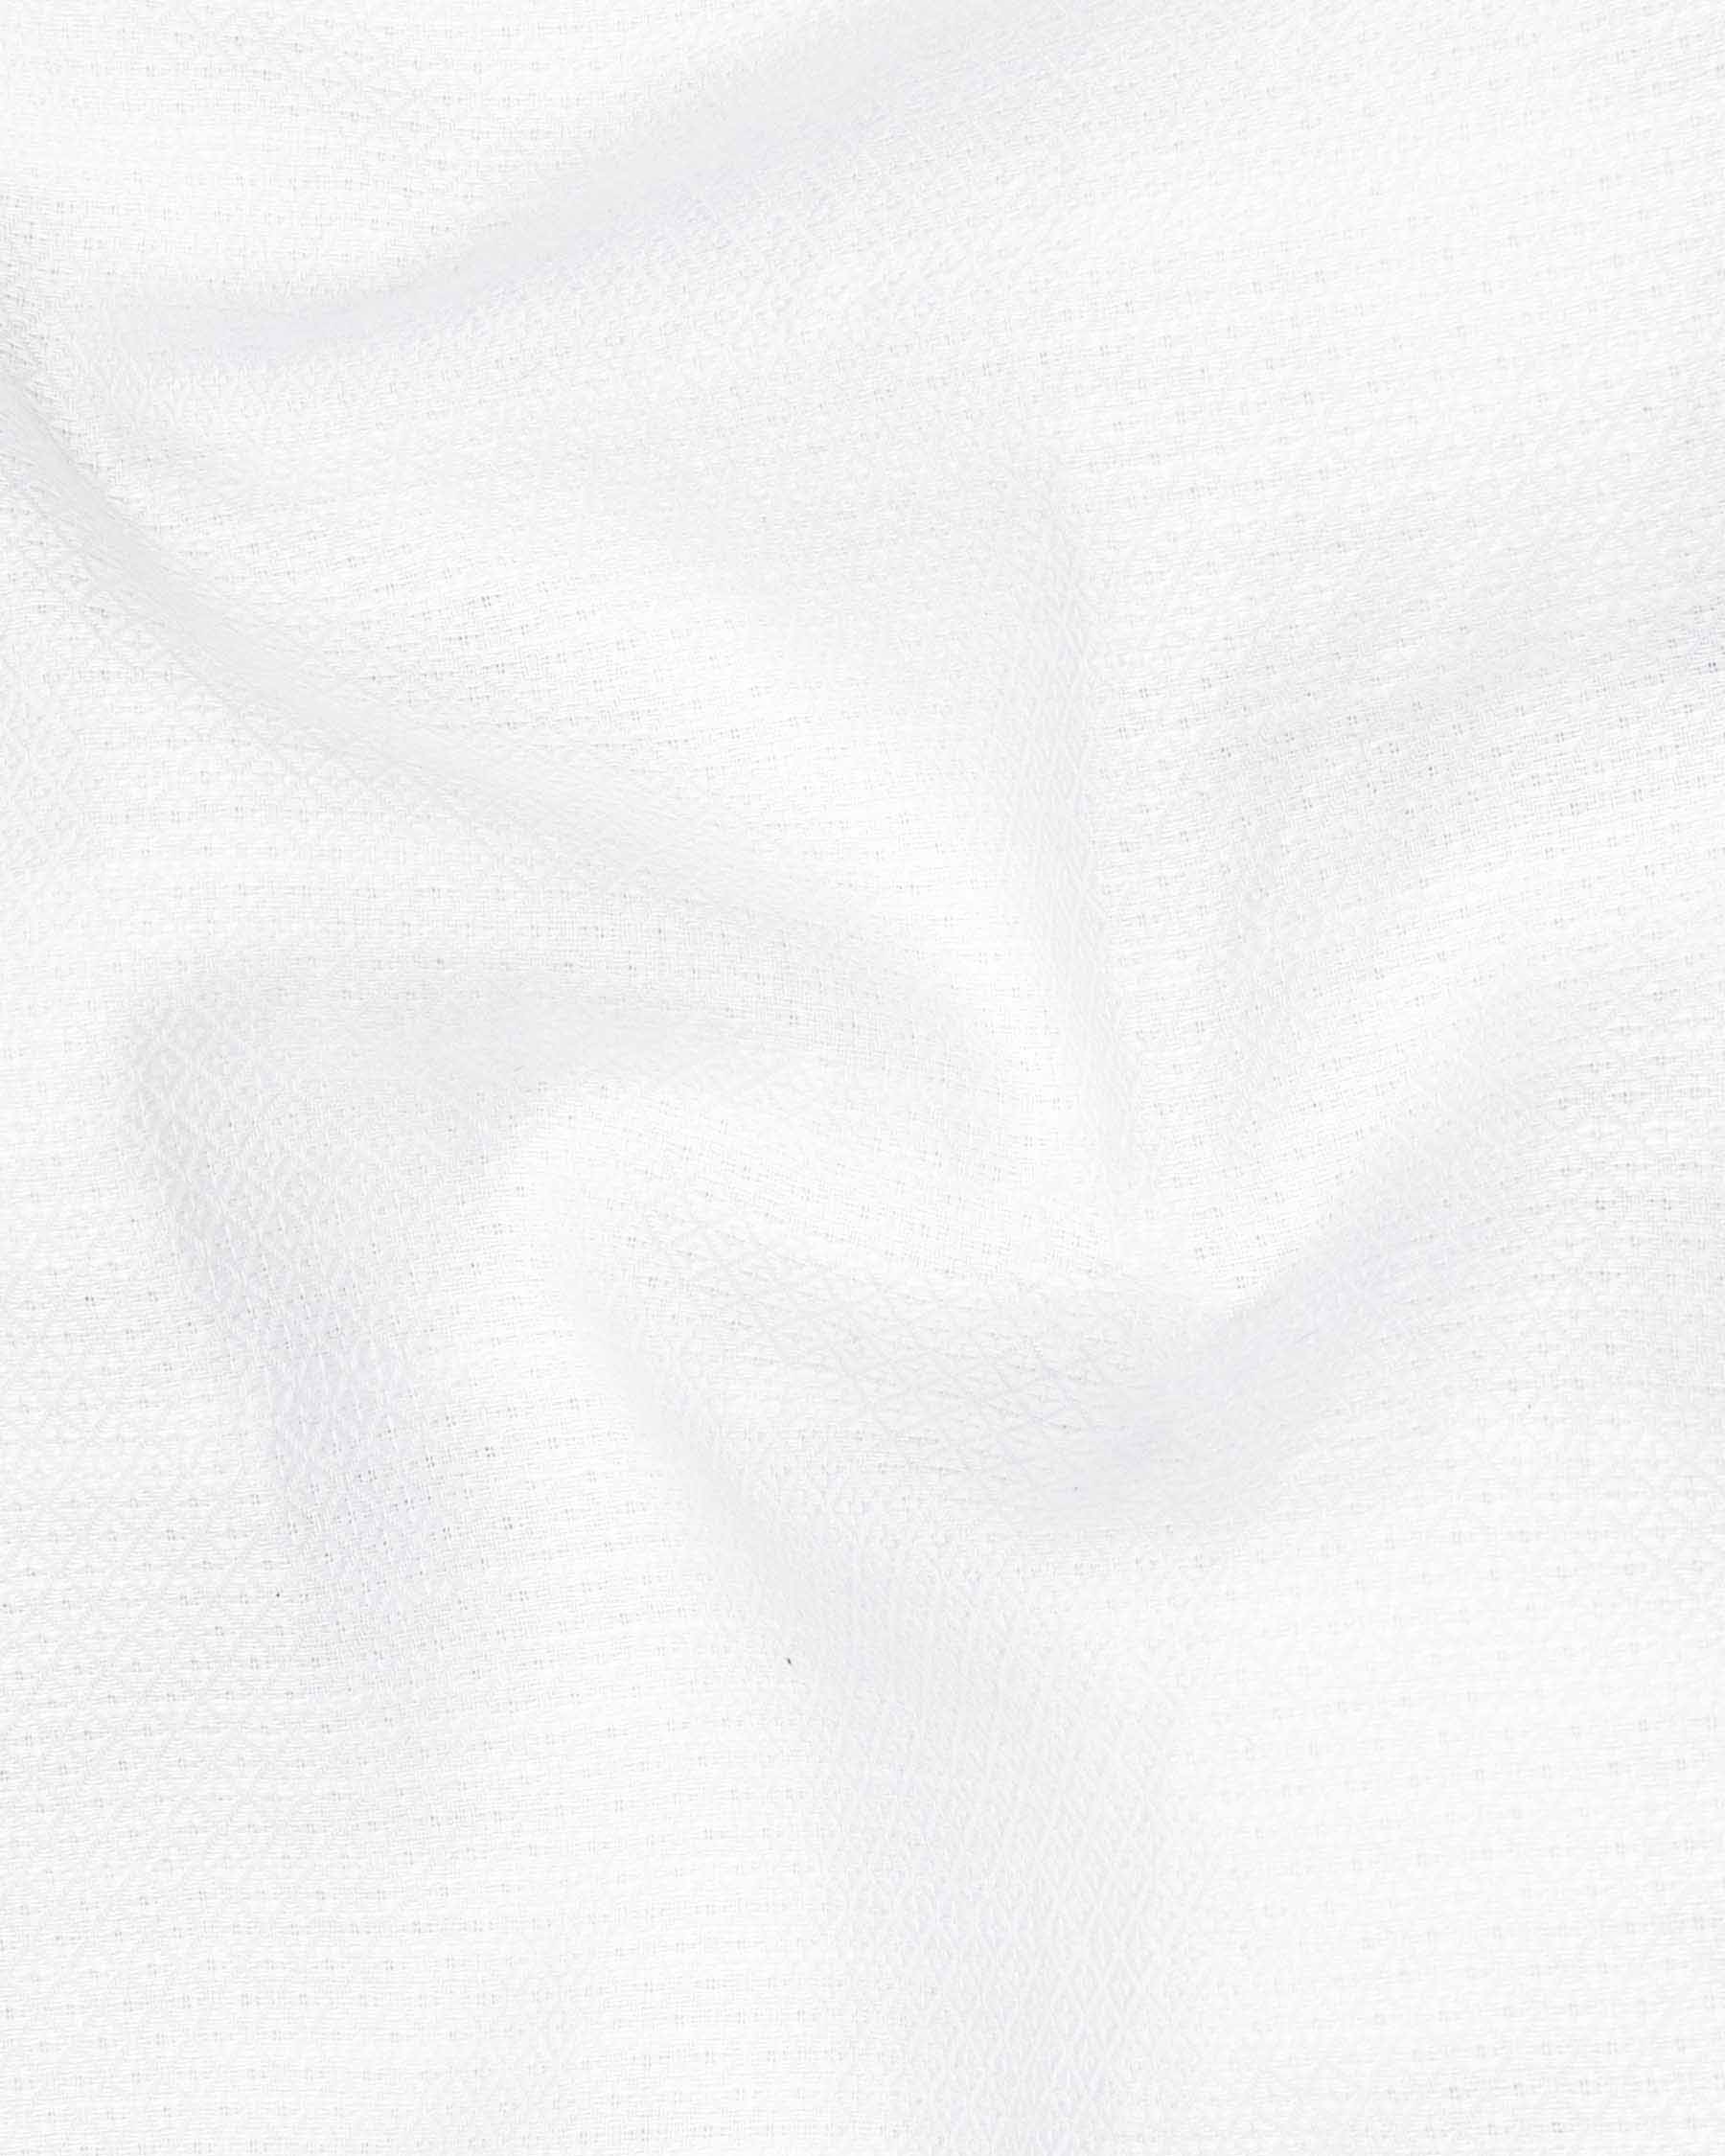 Bright White Dobby Textured Premium Giza Cotton Shirt 6519-CA-38, 6519-CA-H-38, 6519-CA-39, 6519-CA-H-39, 6519-CA-40, 6519-CA-H-40, 6519-CA-42, 6519-CA-H-42, 6519-CA-44, 6519-CA-H-44, 6519-CA-46, 6519-CA-H-46, 6519-CA-48, 6519-CA-H-48, 6519-CA-50, 6519-CA-H-50, 6519-CA-52, 6519-CA-H-52